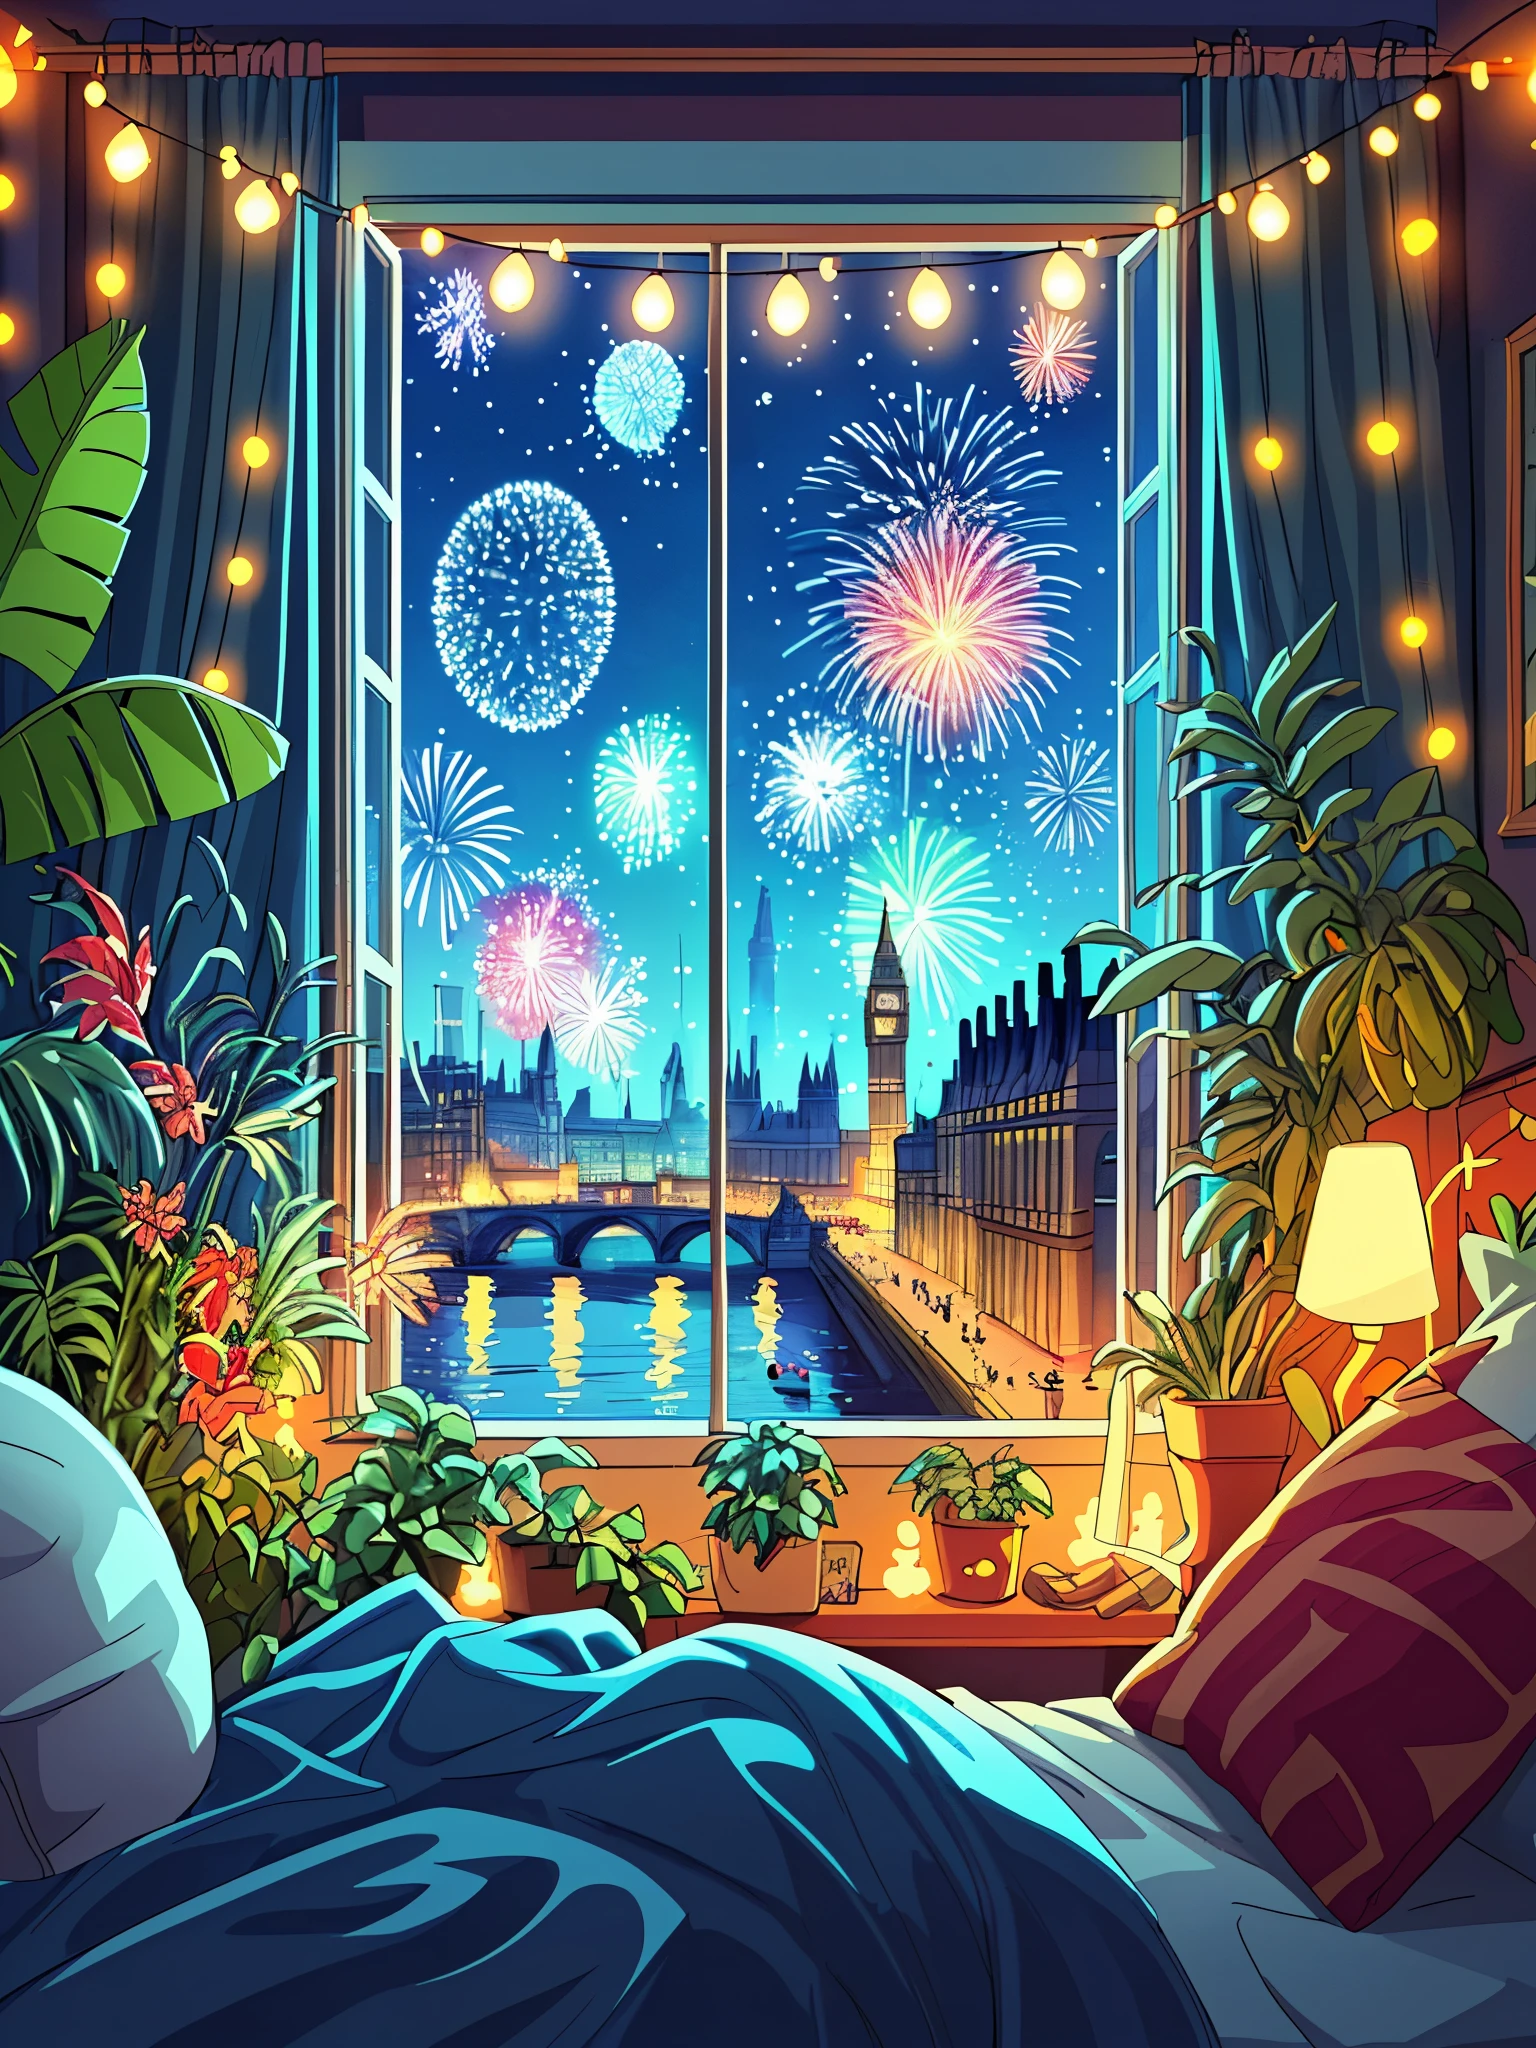 ロンドンでの新年のお祝いの寝室の窓からの眺めを漫画のコンセプトアートで描く, 花火, 装飾, 植物, フェアリーライト, 夜, 美しい空, ナチュラルカラー, 傑作, 平和な風景, 誰も